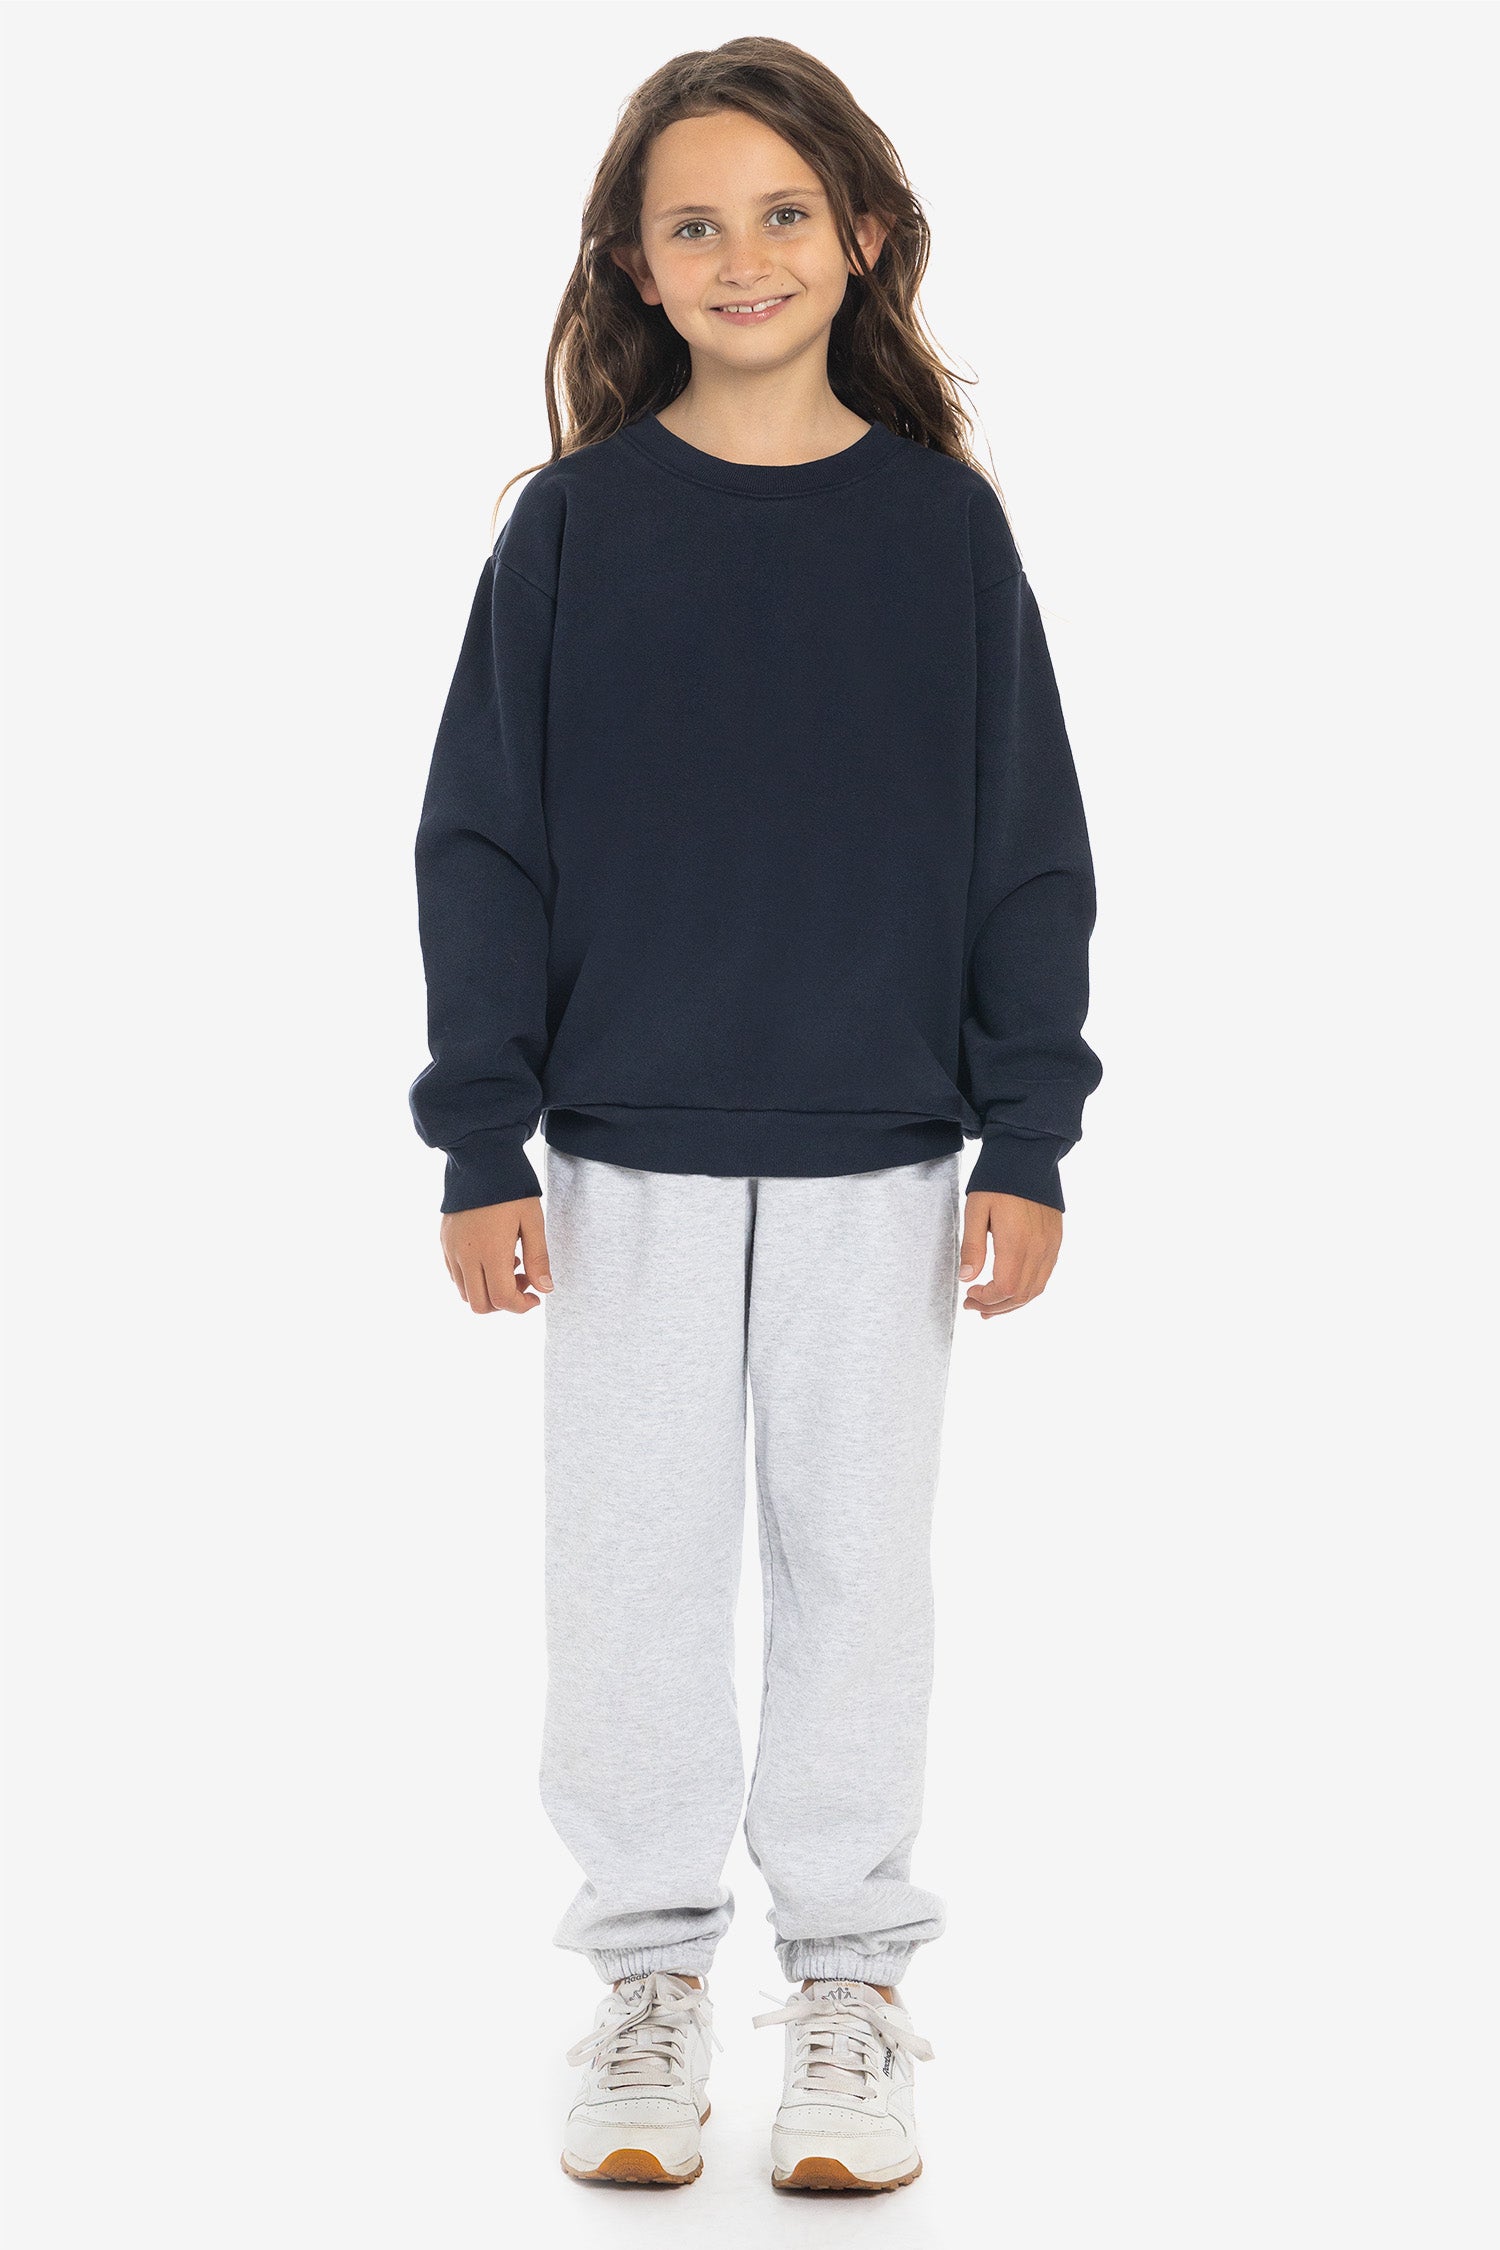 Angeles HF107GD Fleece - – Apparel Sweatshirt Los Kids Dye Crew Garment Heavy